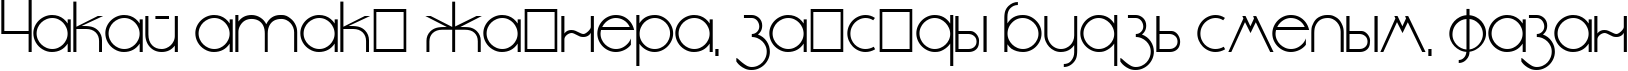 Пример написания шрифтом DS StandartCyr текста на белорусском